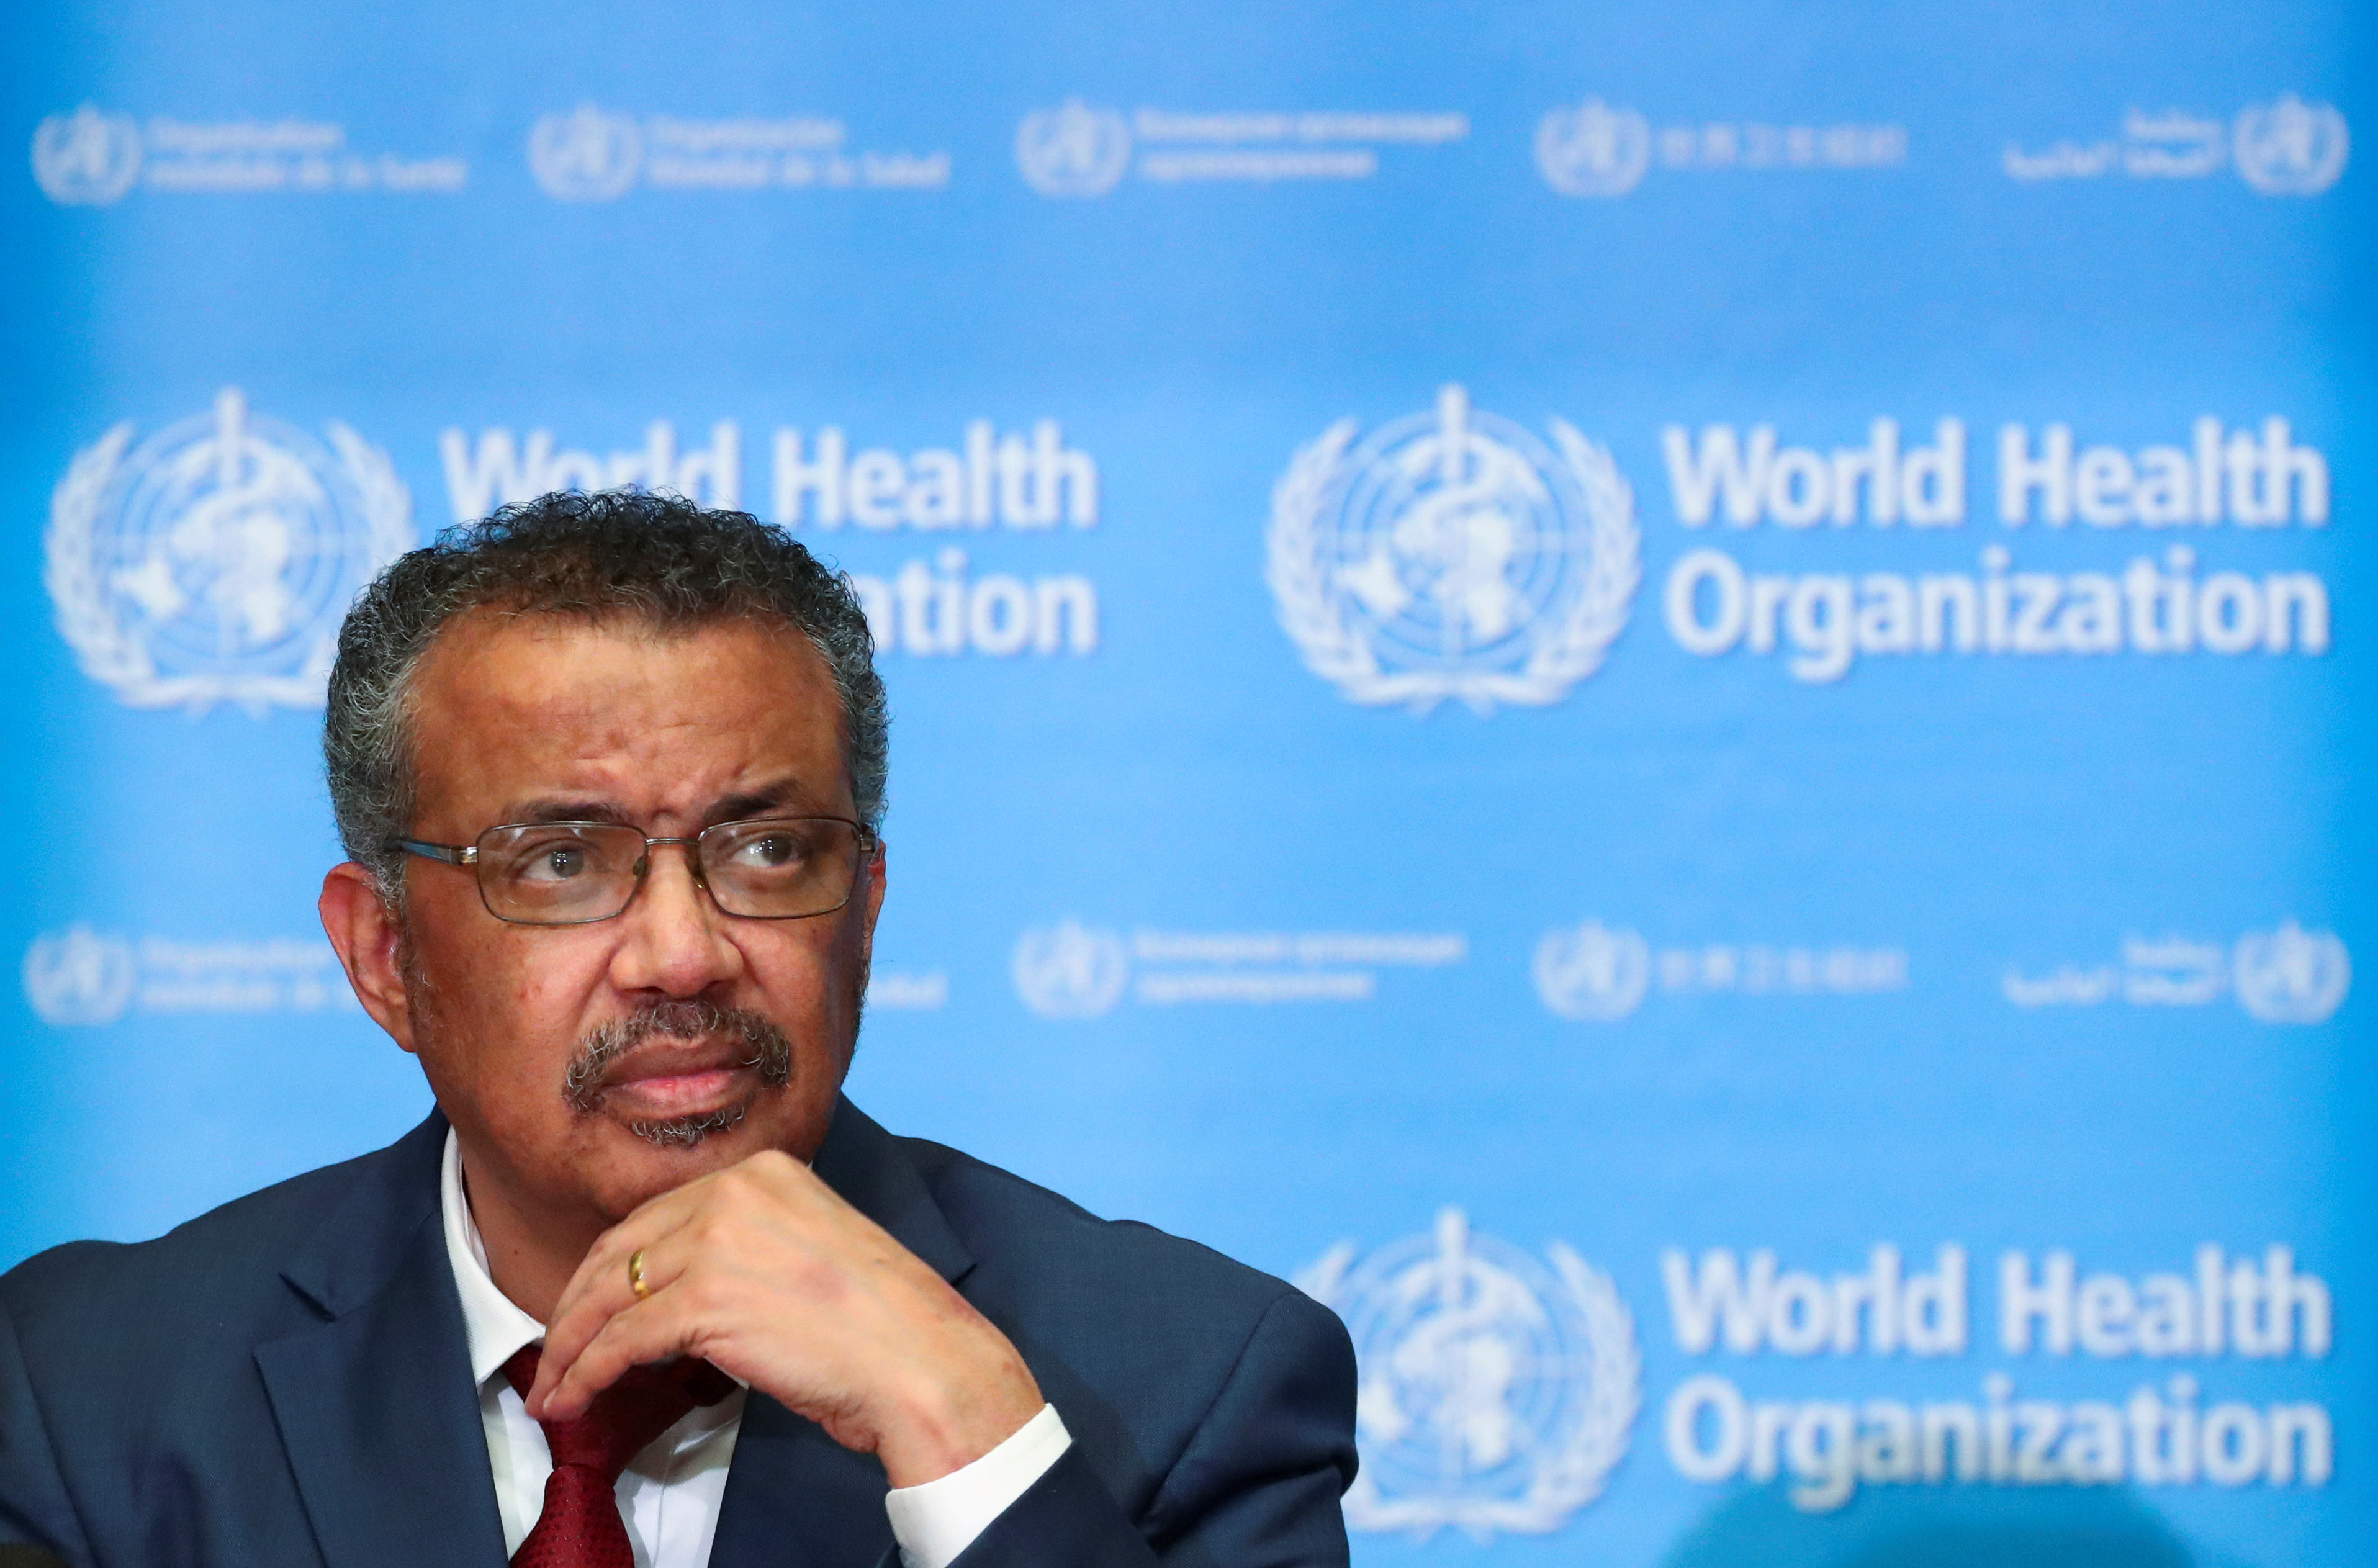 Jefe de la OMS advierte: El coronavirus constituye “una amenaza muy grave” para el mundo